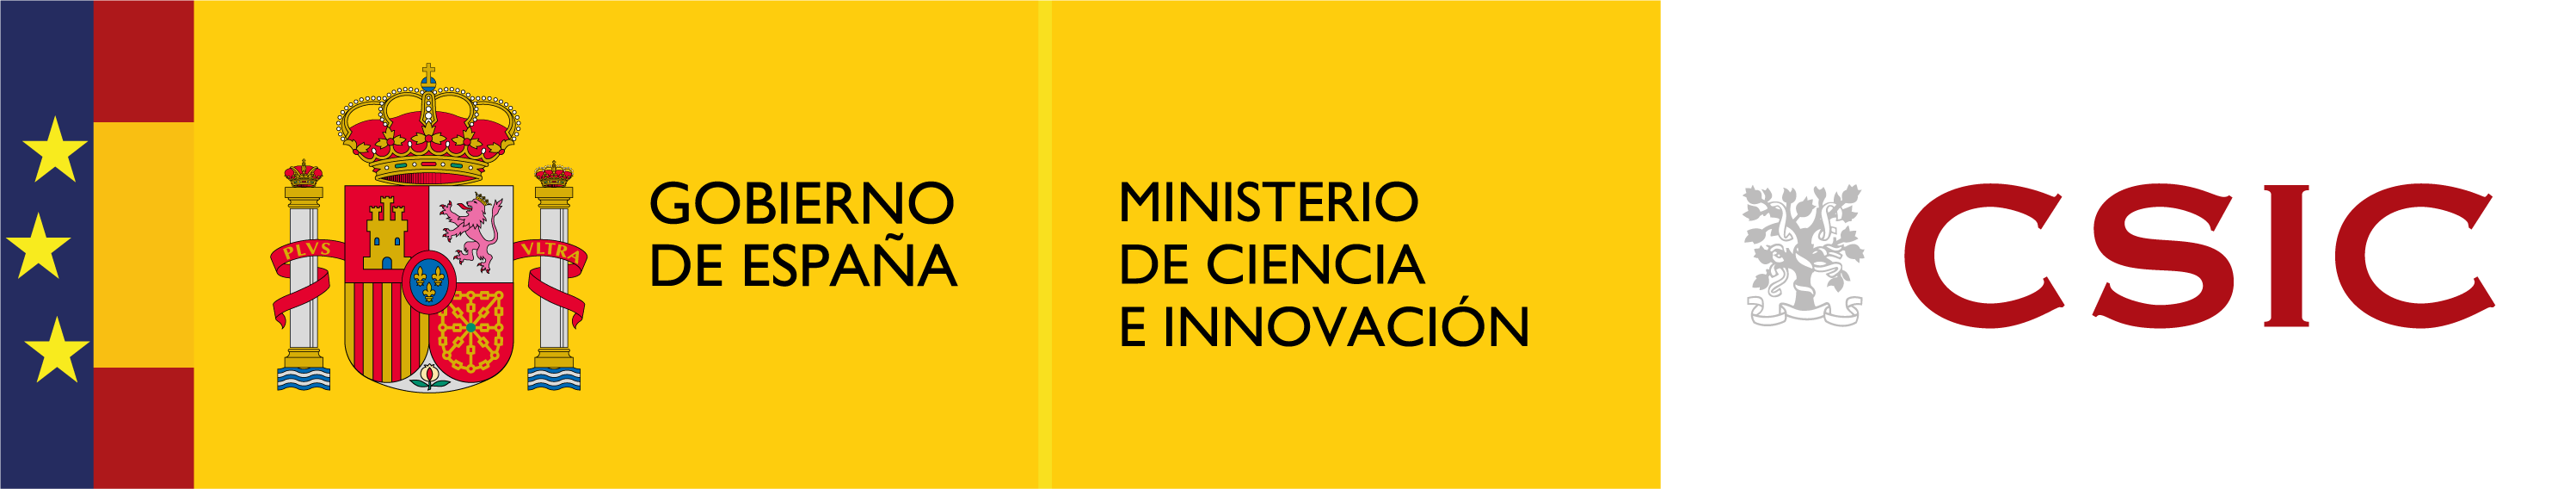 Ministerio de Ciencia y CSIC